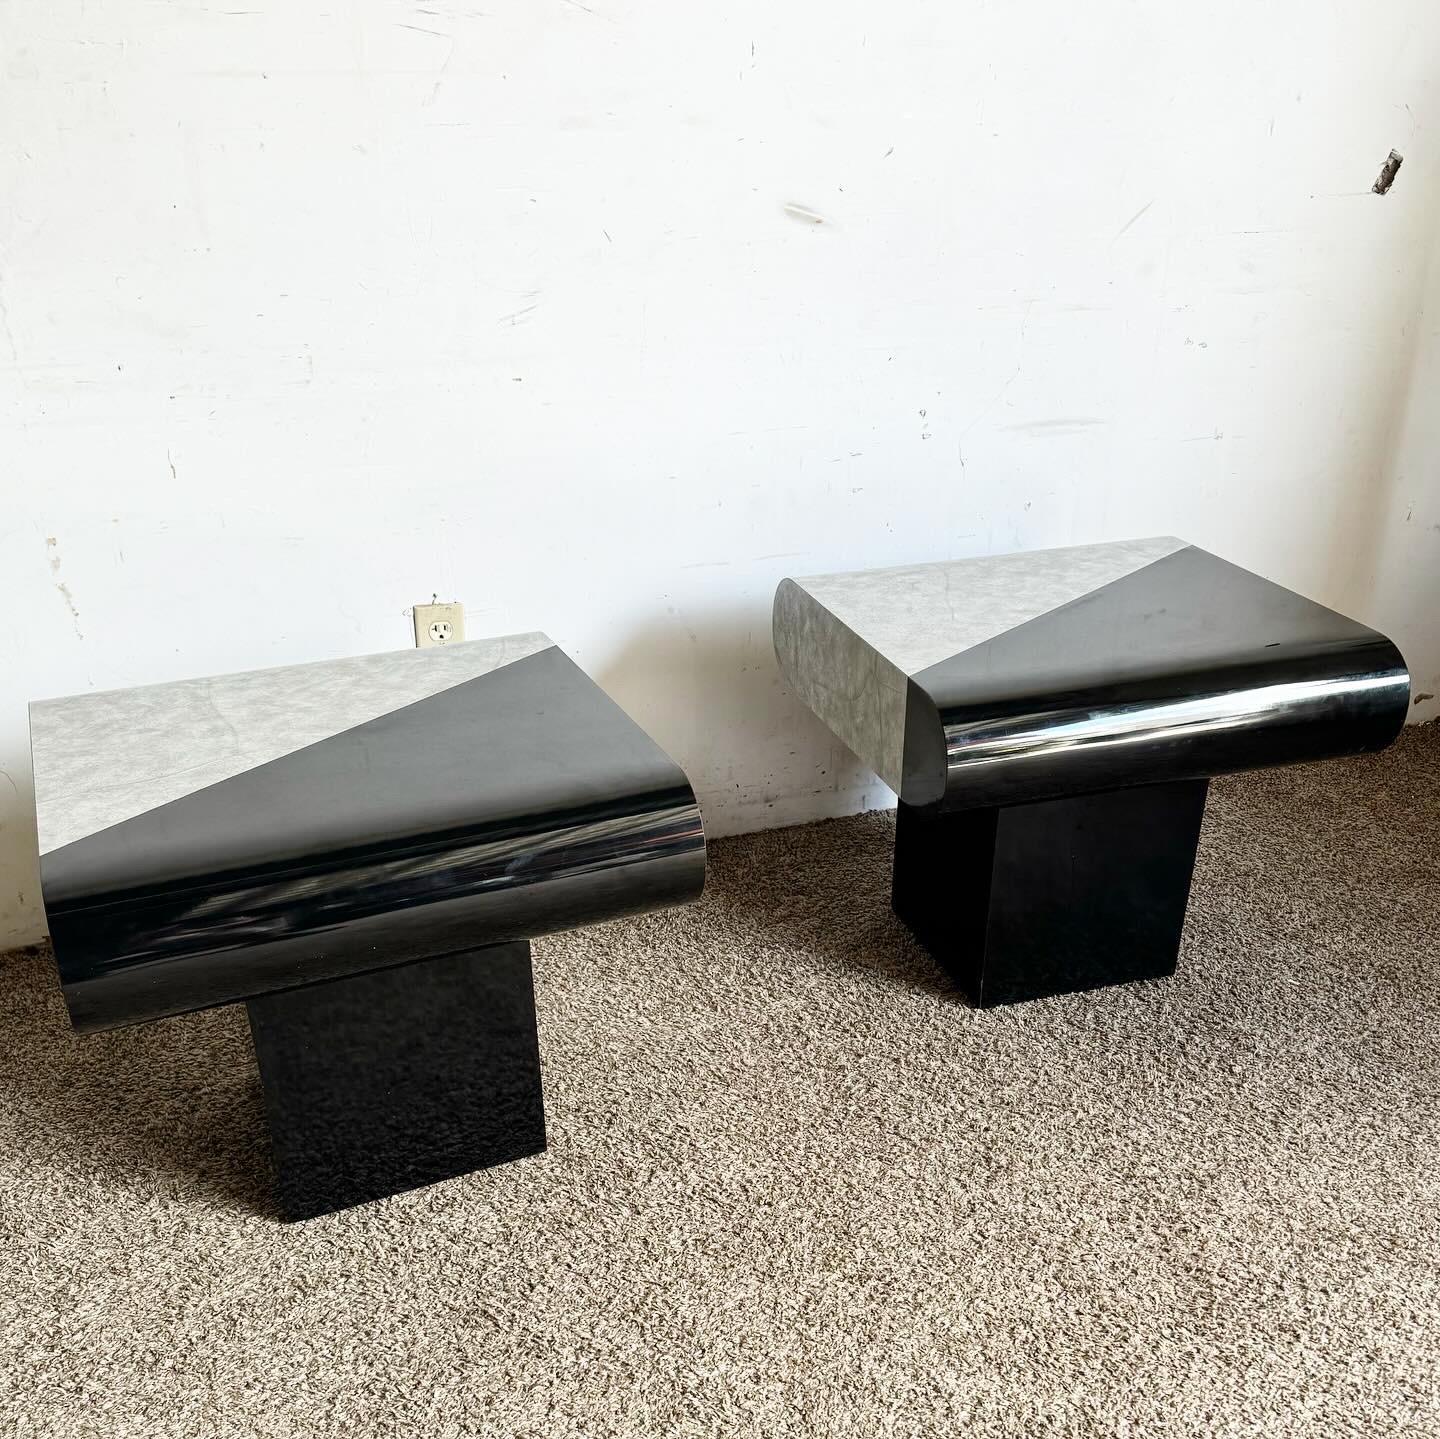 Entdecken Sie das kühne und innovative Design der Postmodern Black Gloss and Faux Stone Laminate Bullnose Side Tables. Mit ihrem auffälligen Kontrast zwischen elegantem schwarzem Glanz und strukturiertem Kunststein sind diese Tische ein Beispiel für